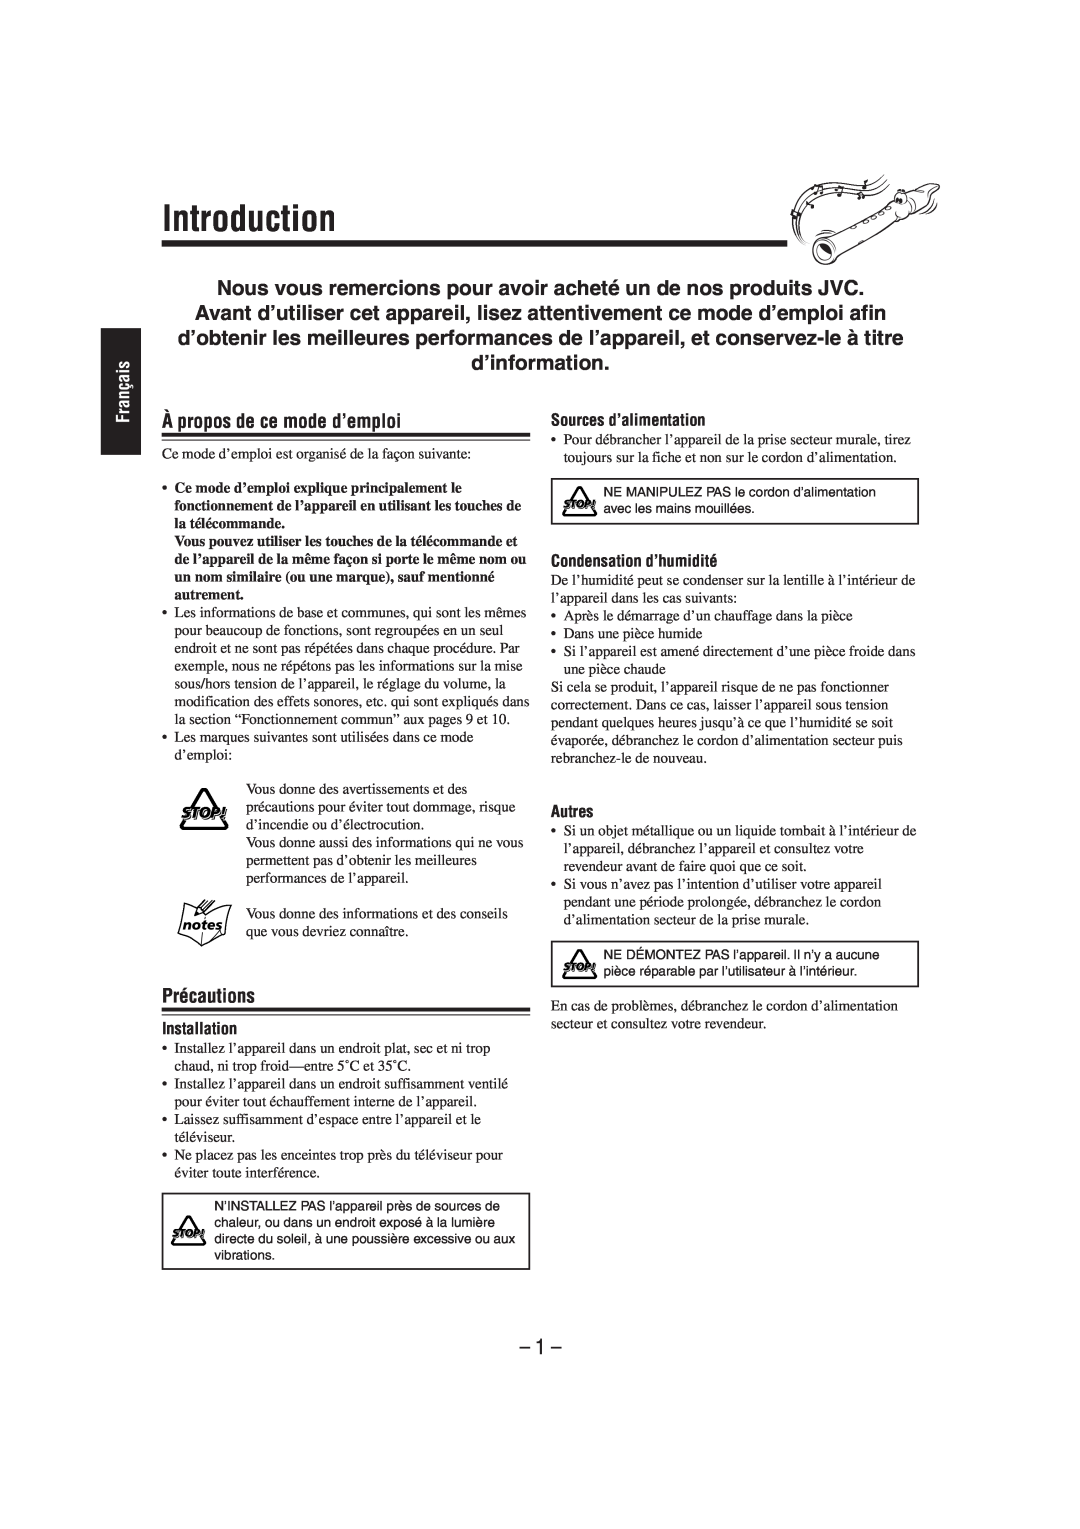 JVC FS-L30 manual Introduction, À propos de ce mode d’emploi, Précautions, Français 